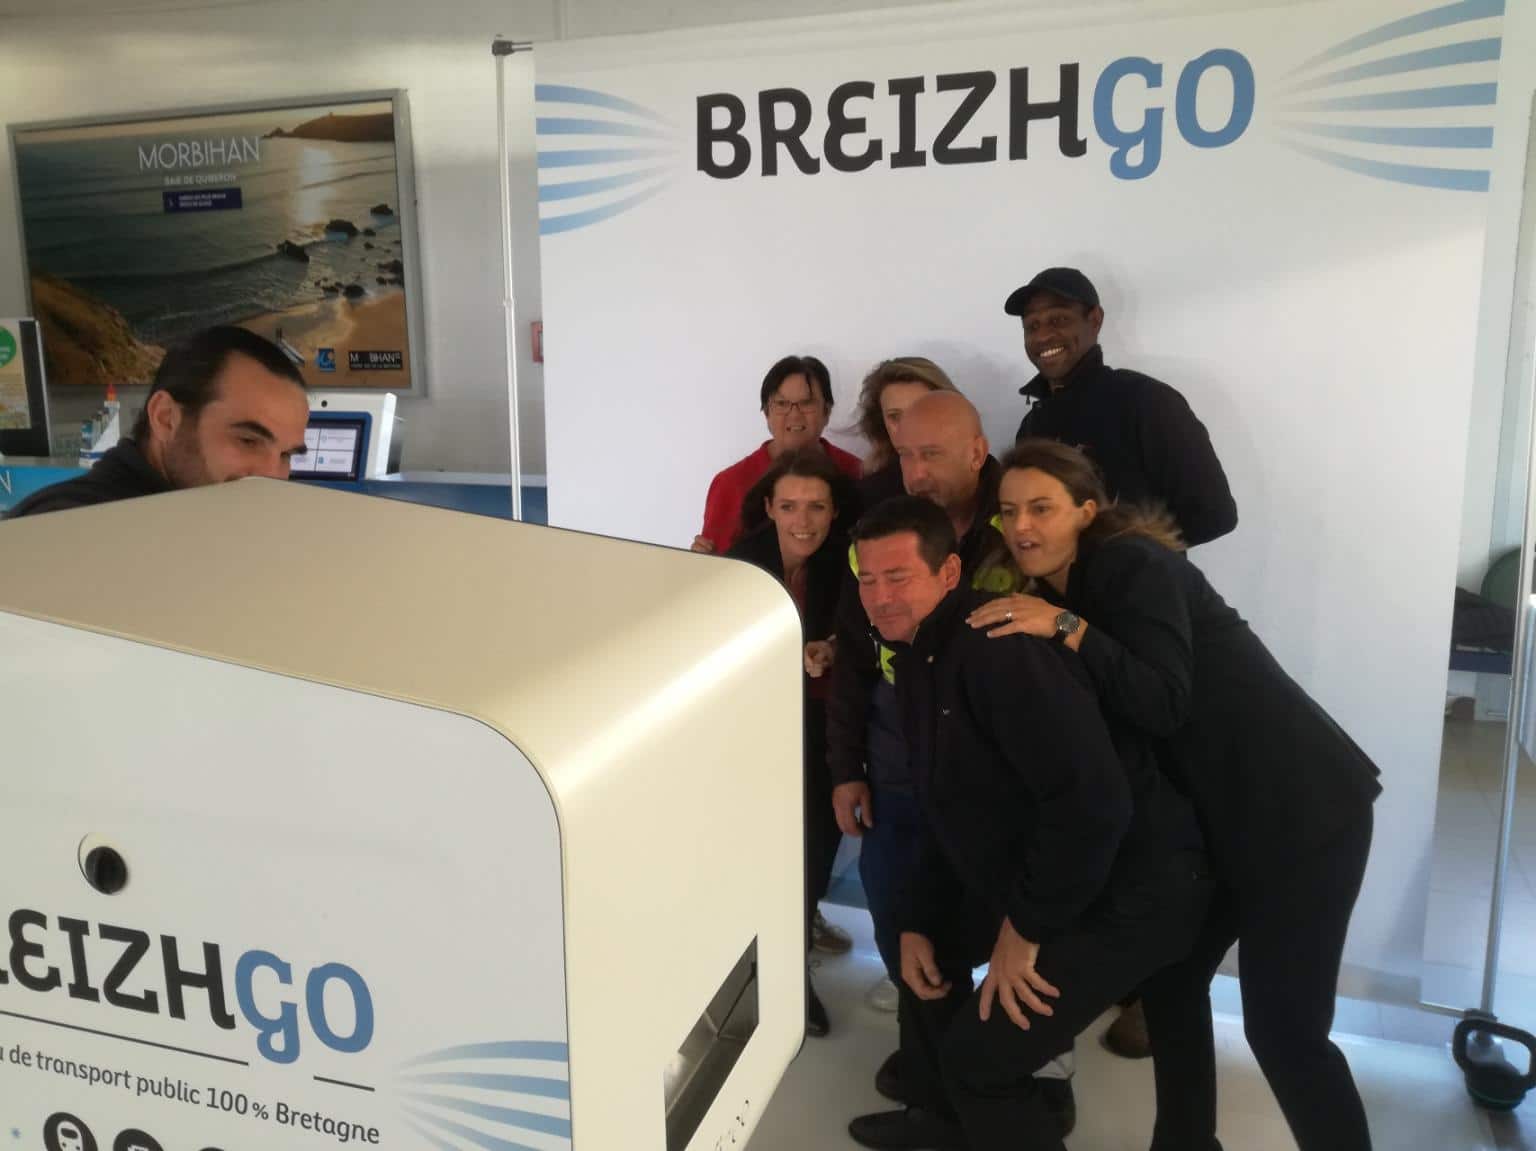 Borne photo avec animation photocall au lancement officiel 2018 de la marque Breizhgo à Lorient dans le Morbihan